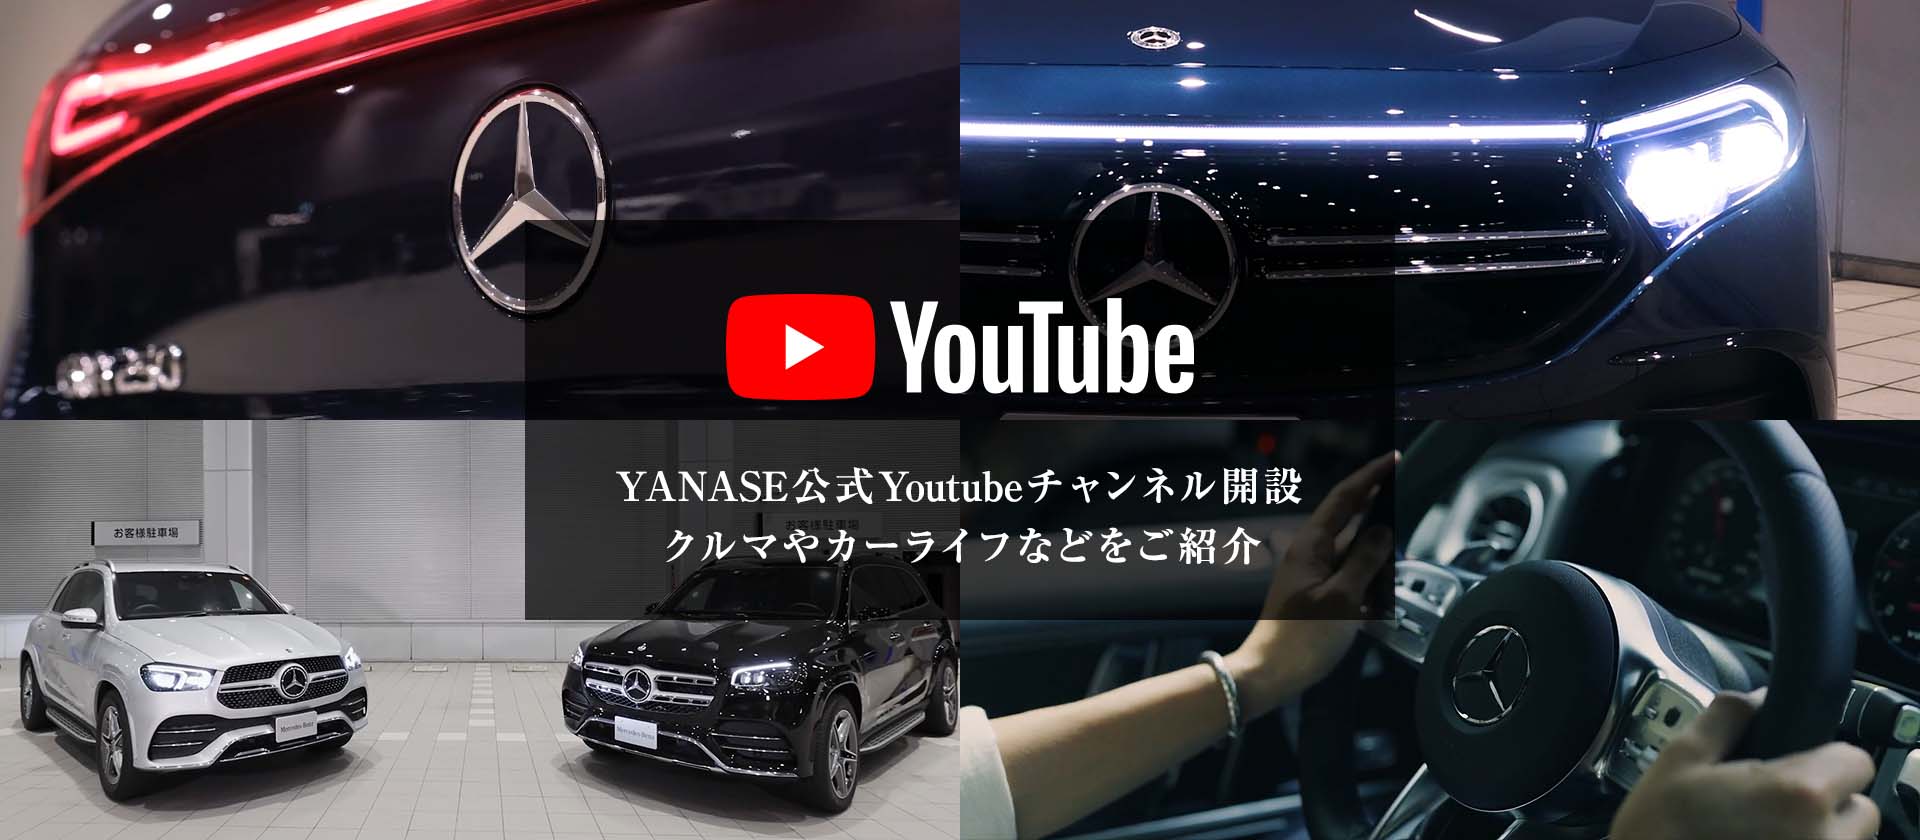 Youtube YANASE公式Youtubeチャンネル開設 クルマやカーライフのスライドにバナー追加をお願いします。